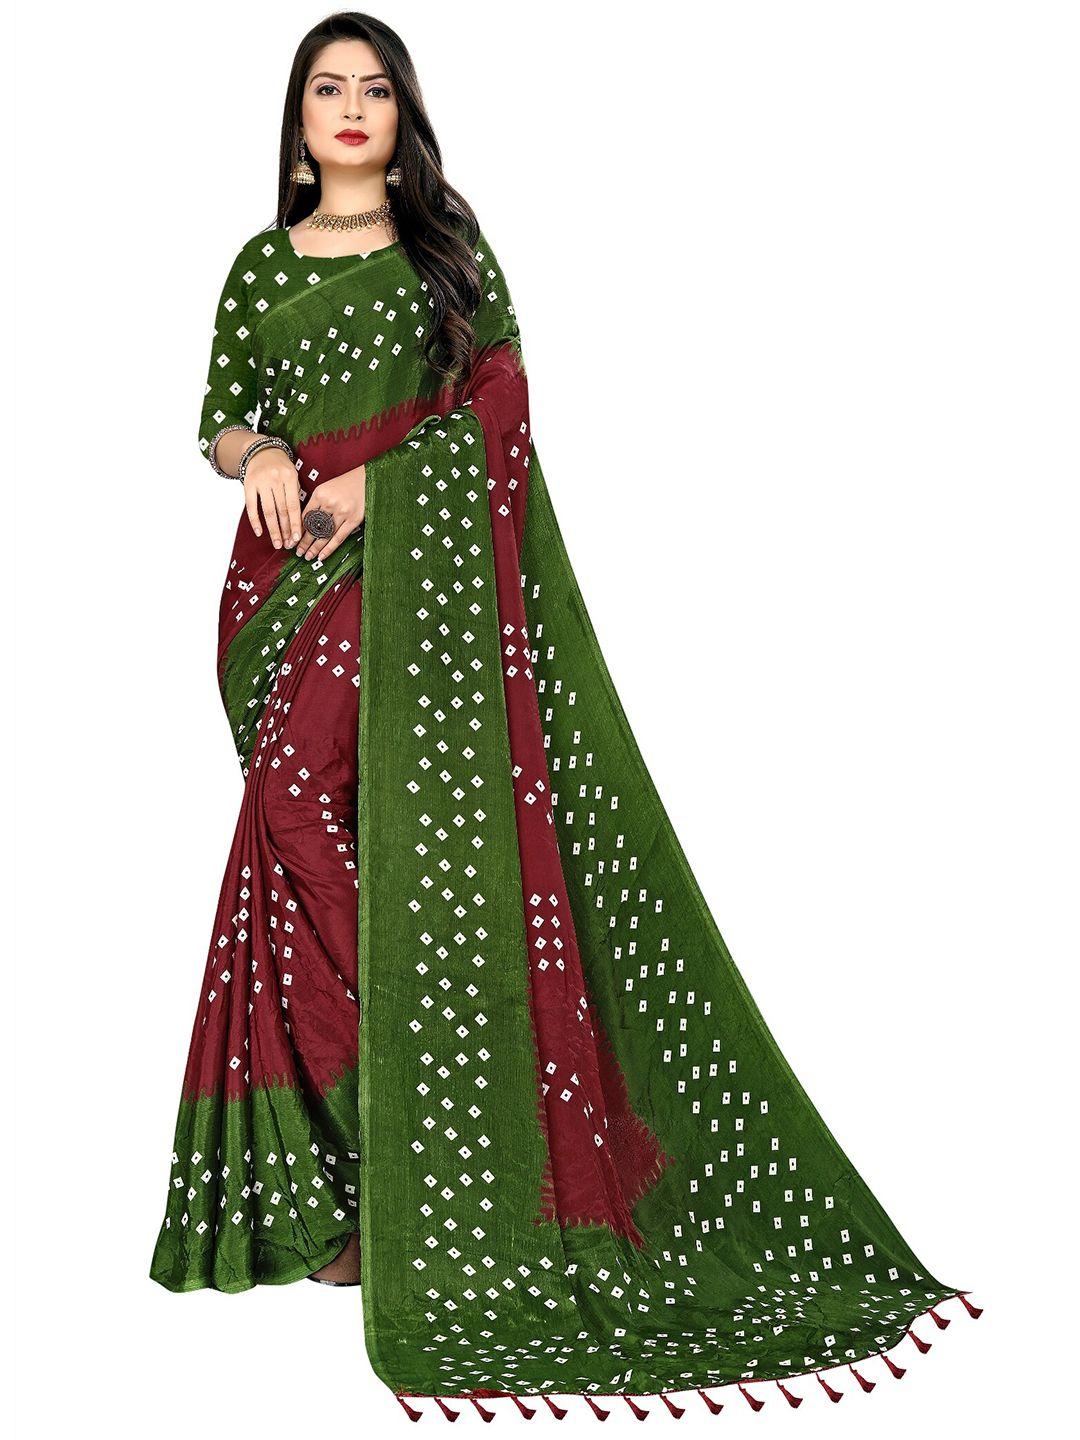 laheja maroon & green bandhani printed saree